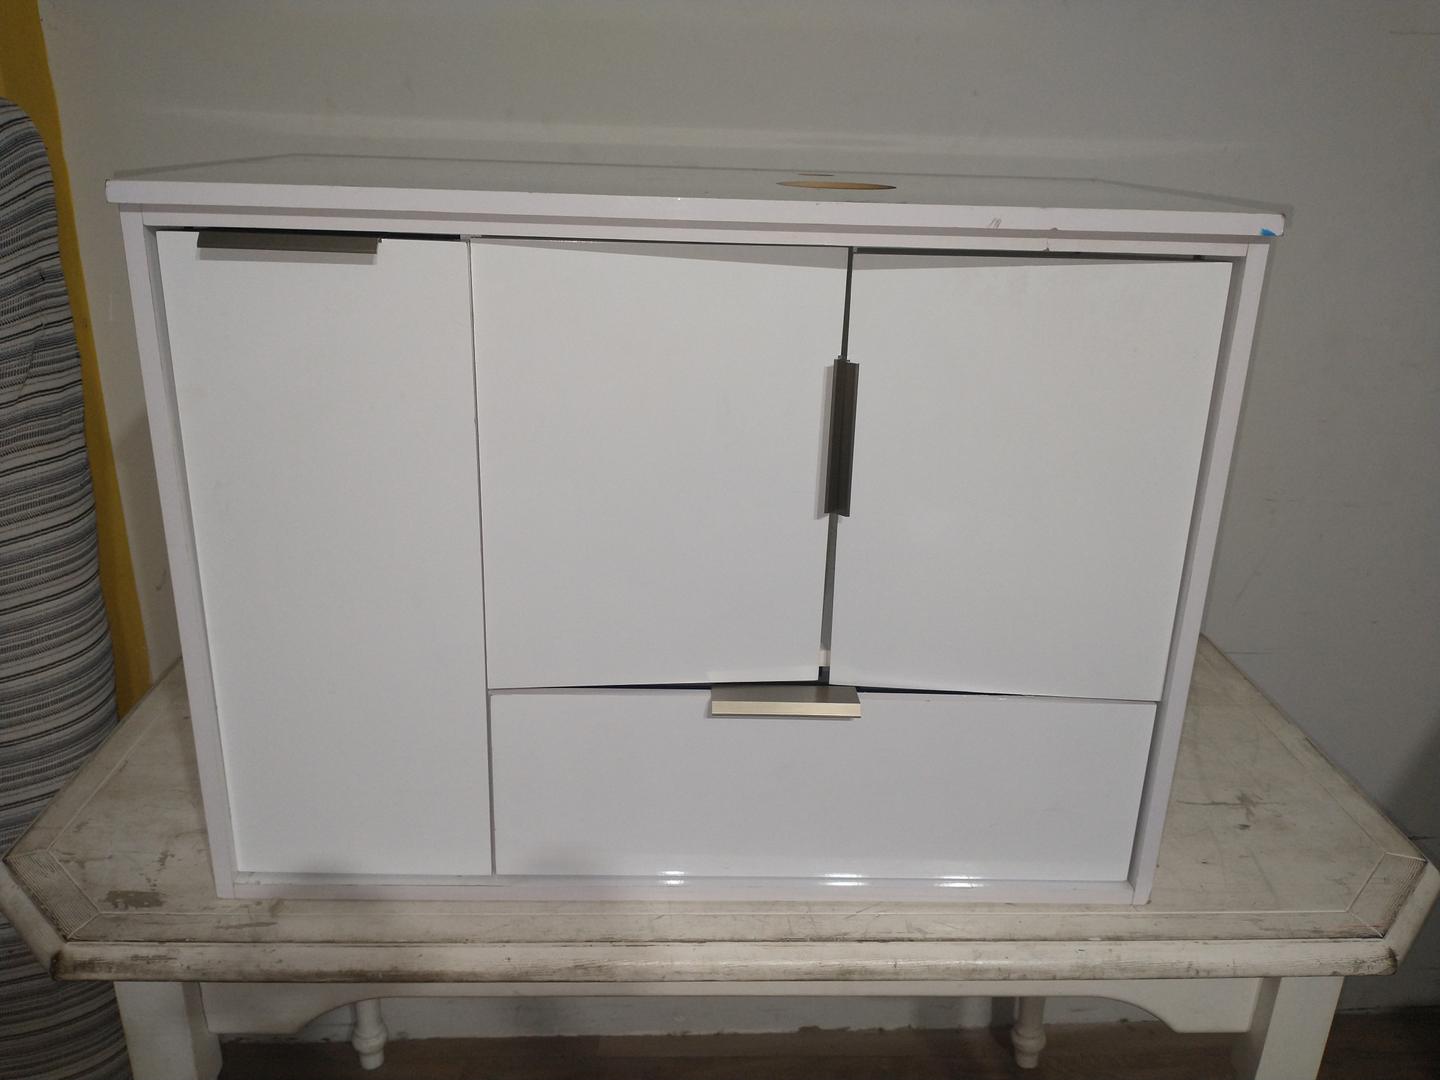 Gabinete para Banheiro 3 Portas 1 Gaveta em MDF Branco 59 cm x 80 cm x 40 cm